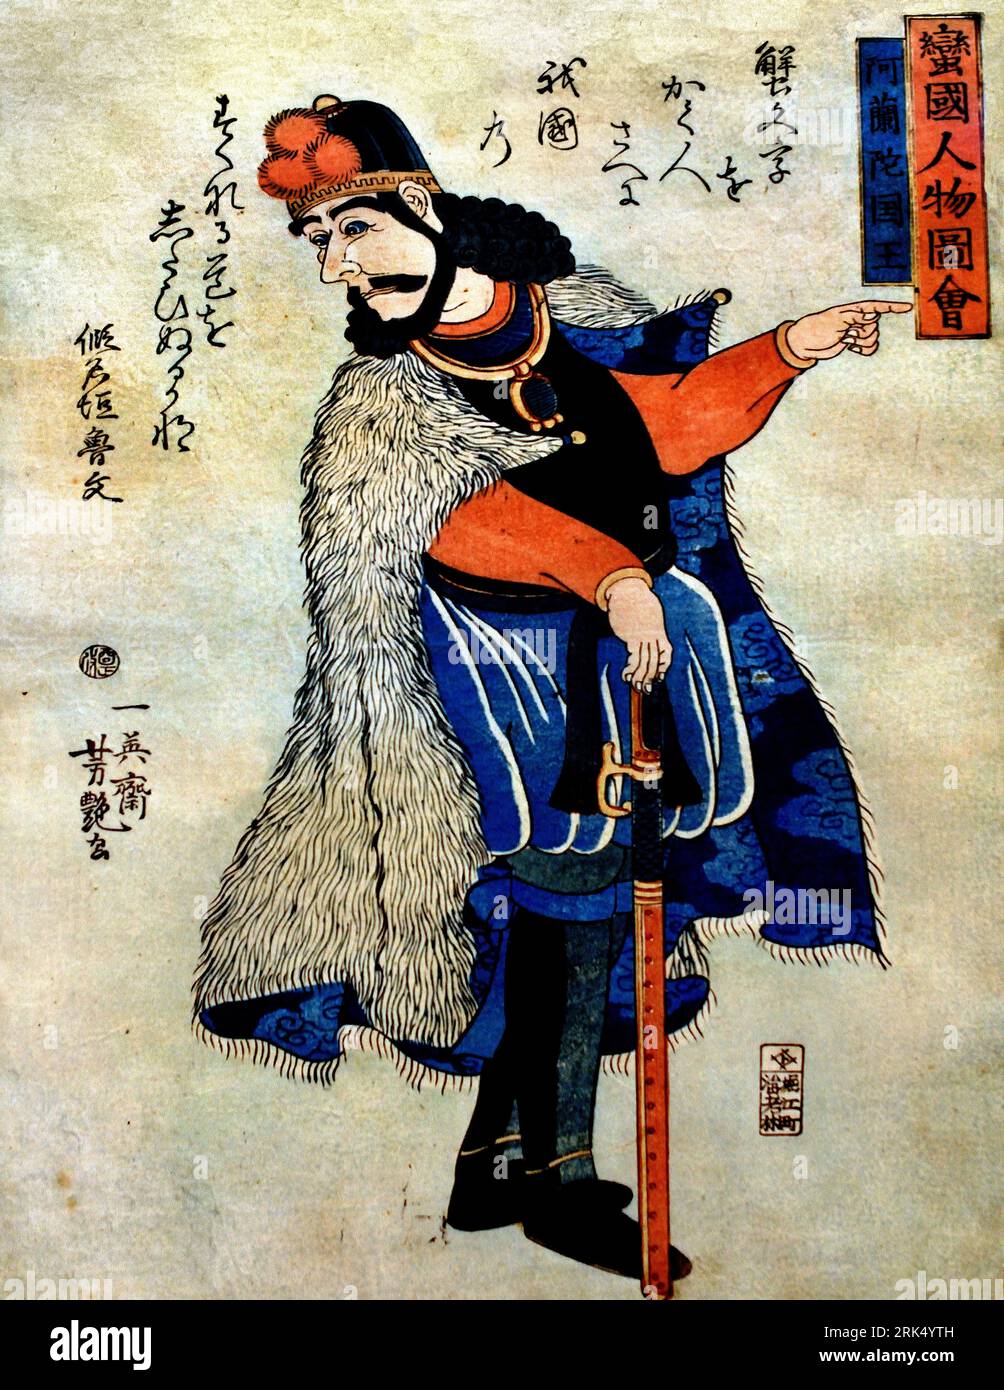 Der König von Holland, 1861, von Utagawa Yoshitsuya, Japan, japanischer, langer Mann (Holländer), dargestellt als japanischer Samurai, seine rechte Hand lehnt sich auf ein Schwert, die linke zeigt nach rechts, Kopf mit Bart, lockiges Haar von mittlerer Länge, ein Kopfbedeckung sieht nach links, Ein Pelzmantel über seinen Schultern, karikiertes Phantasieporträt, König Wilhelm III., Künstler Utagawa Yoshitsuya, Bankoku jimbutsu zue , Stockfoto